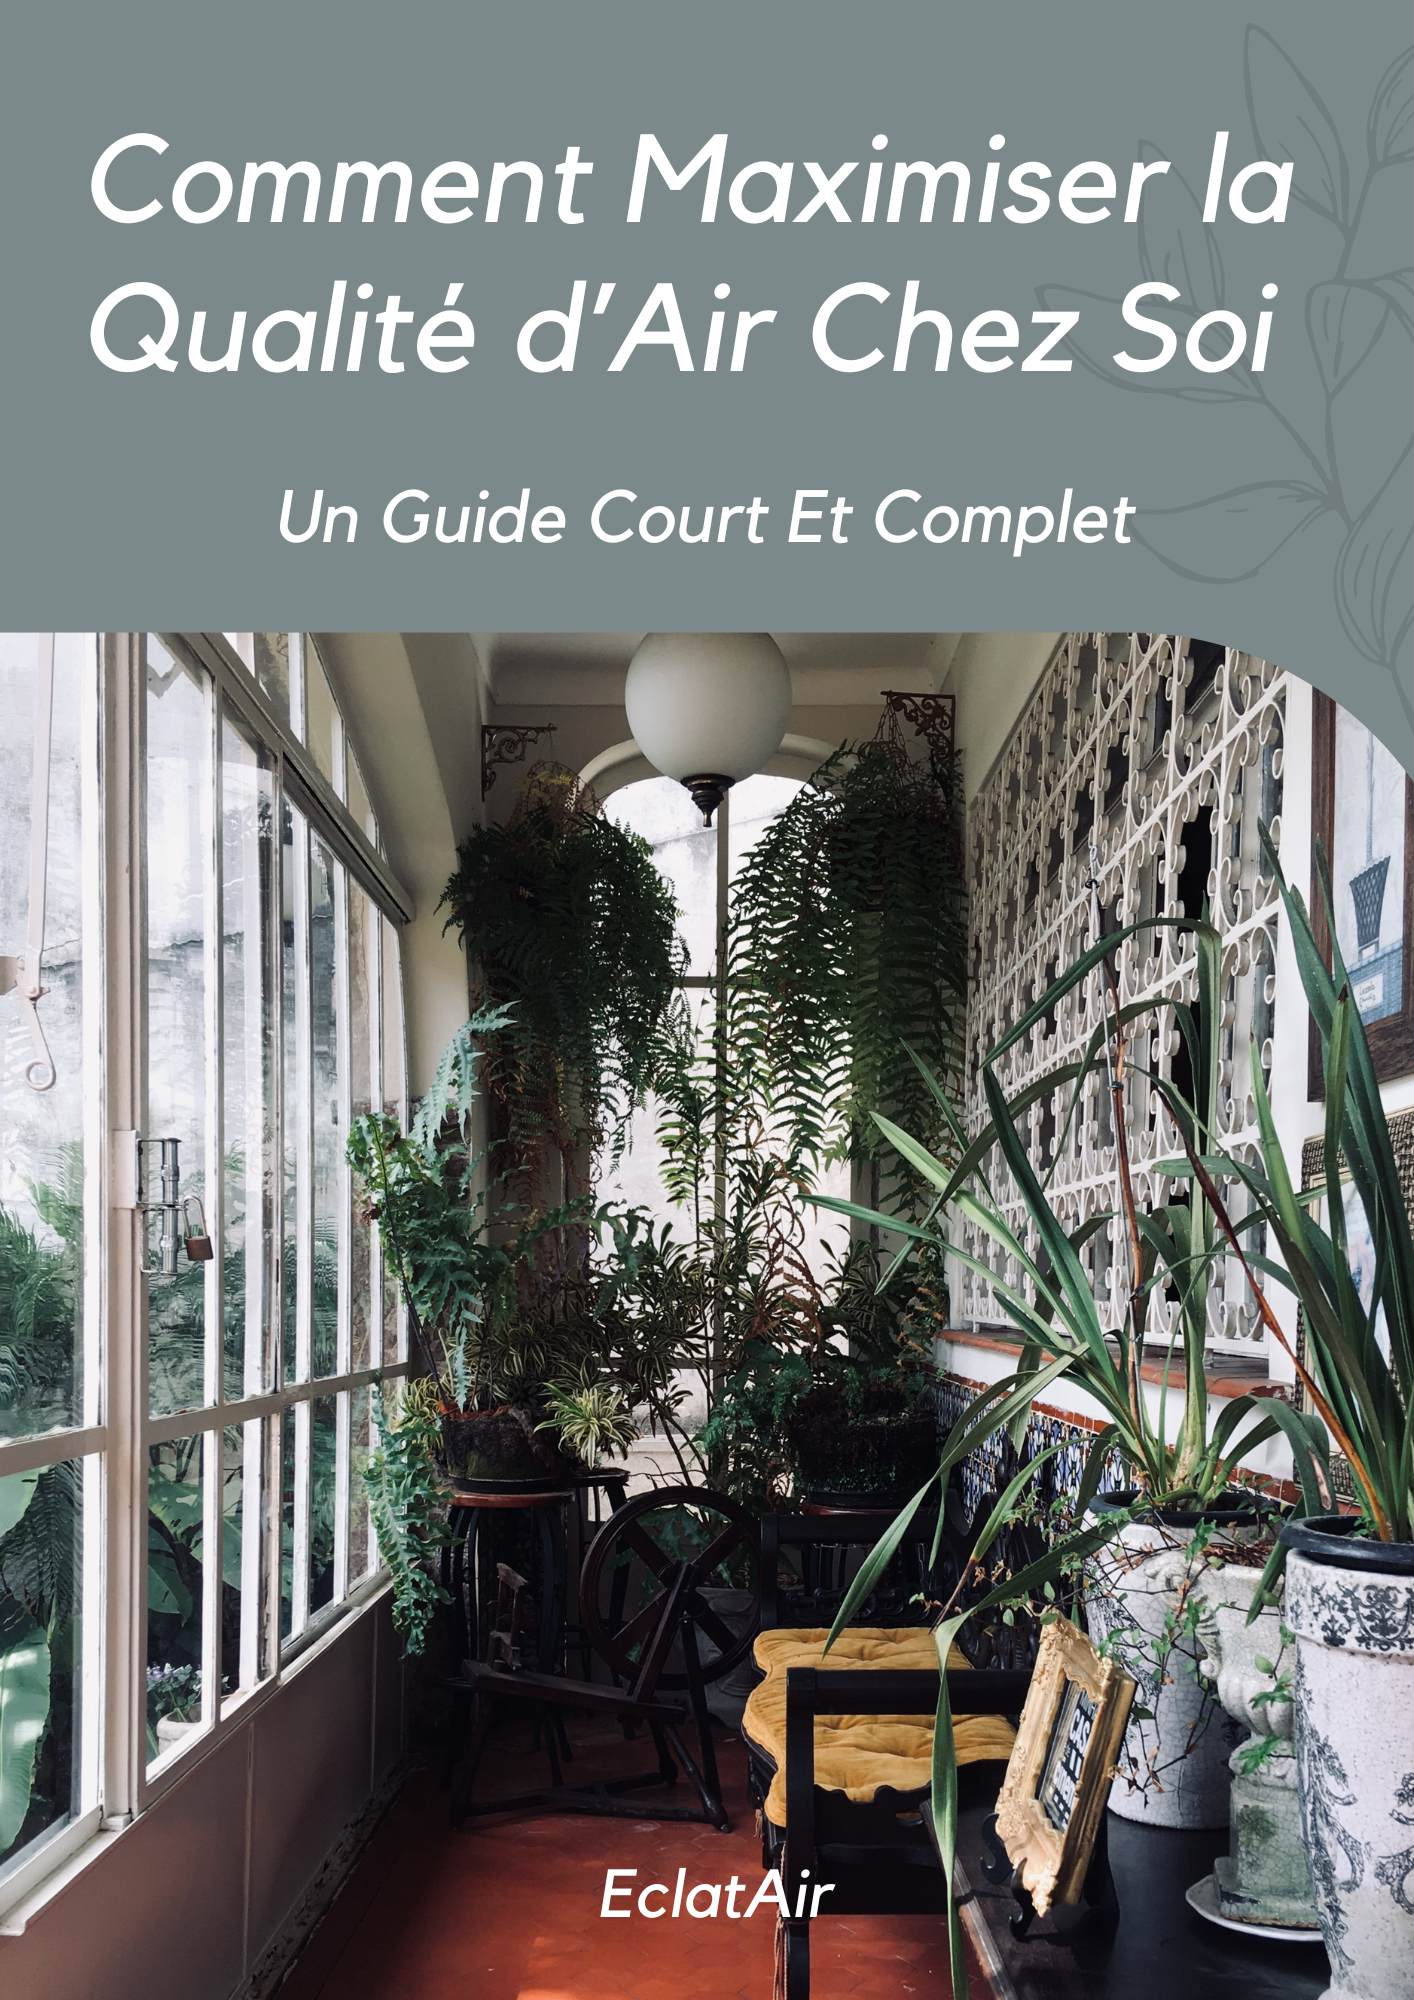 Comment Maximiser La Qualité d'Air Chez Soi - Guide Digital